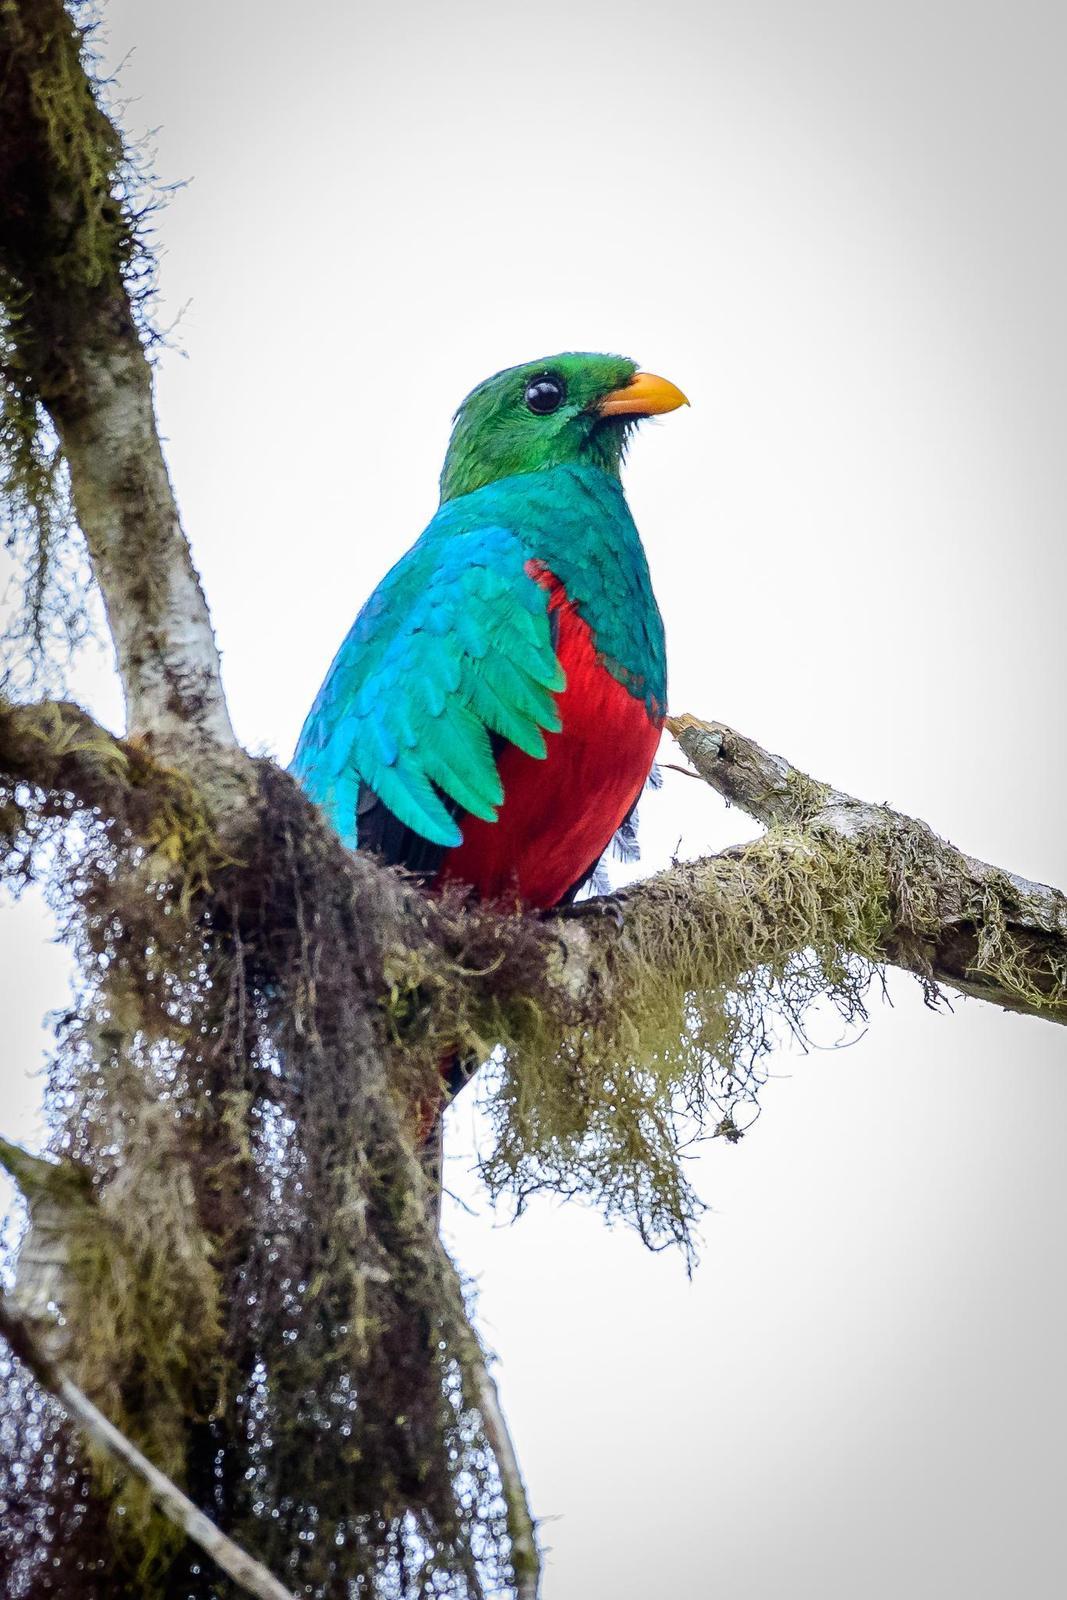 Golden-headed Quetzal Photo by pancho enriquez